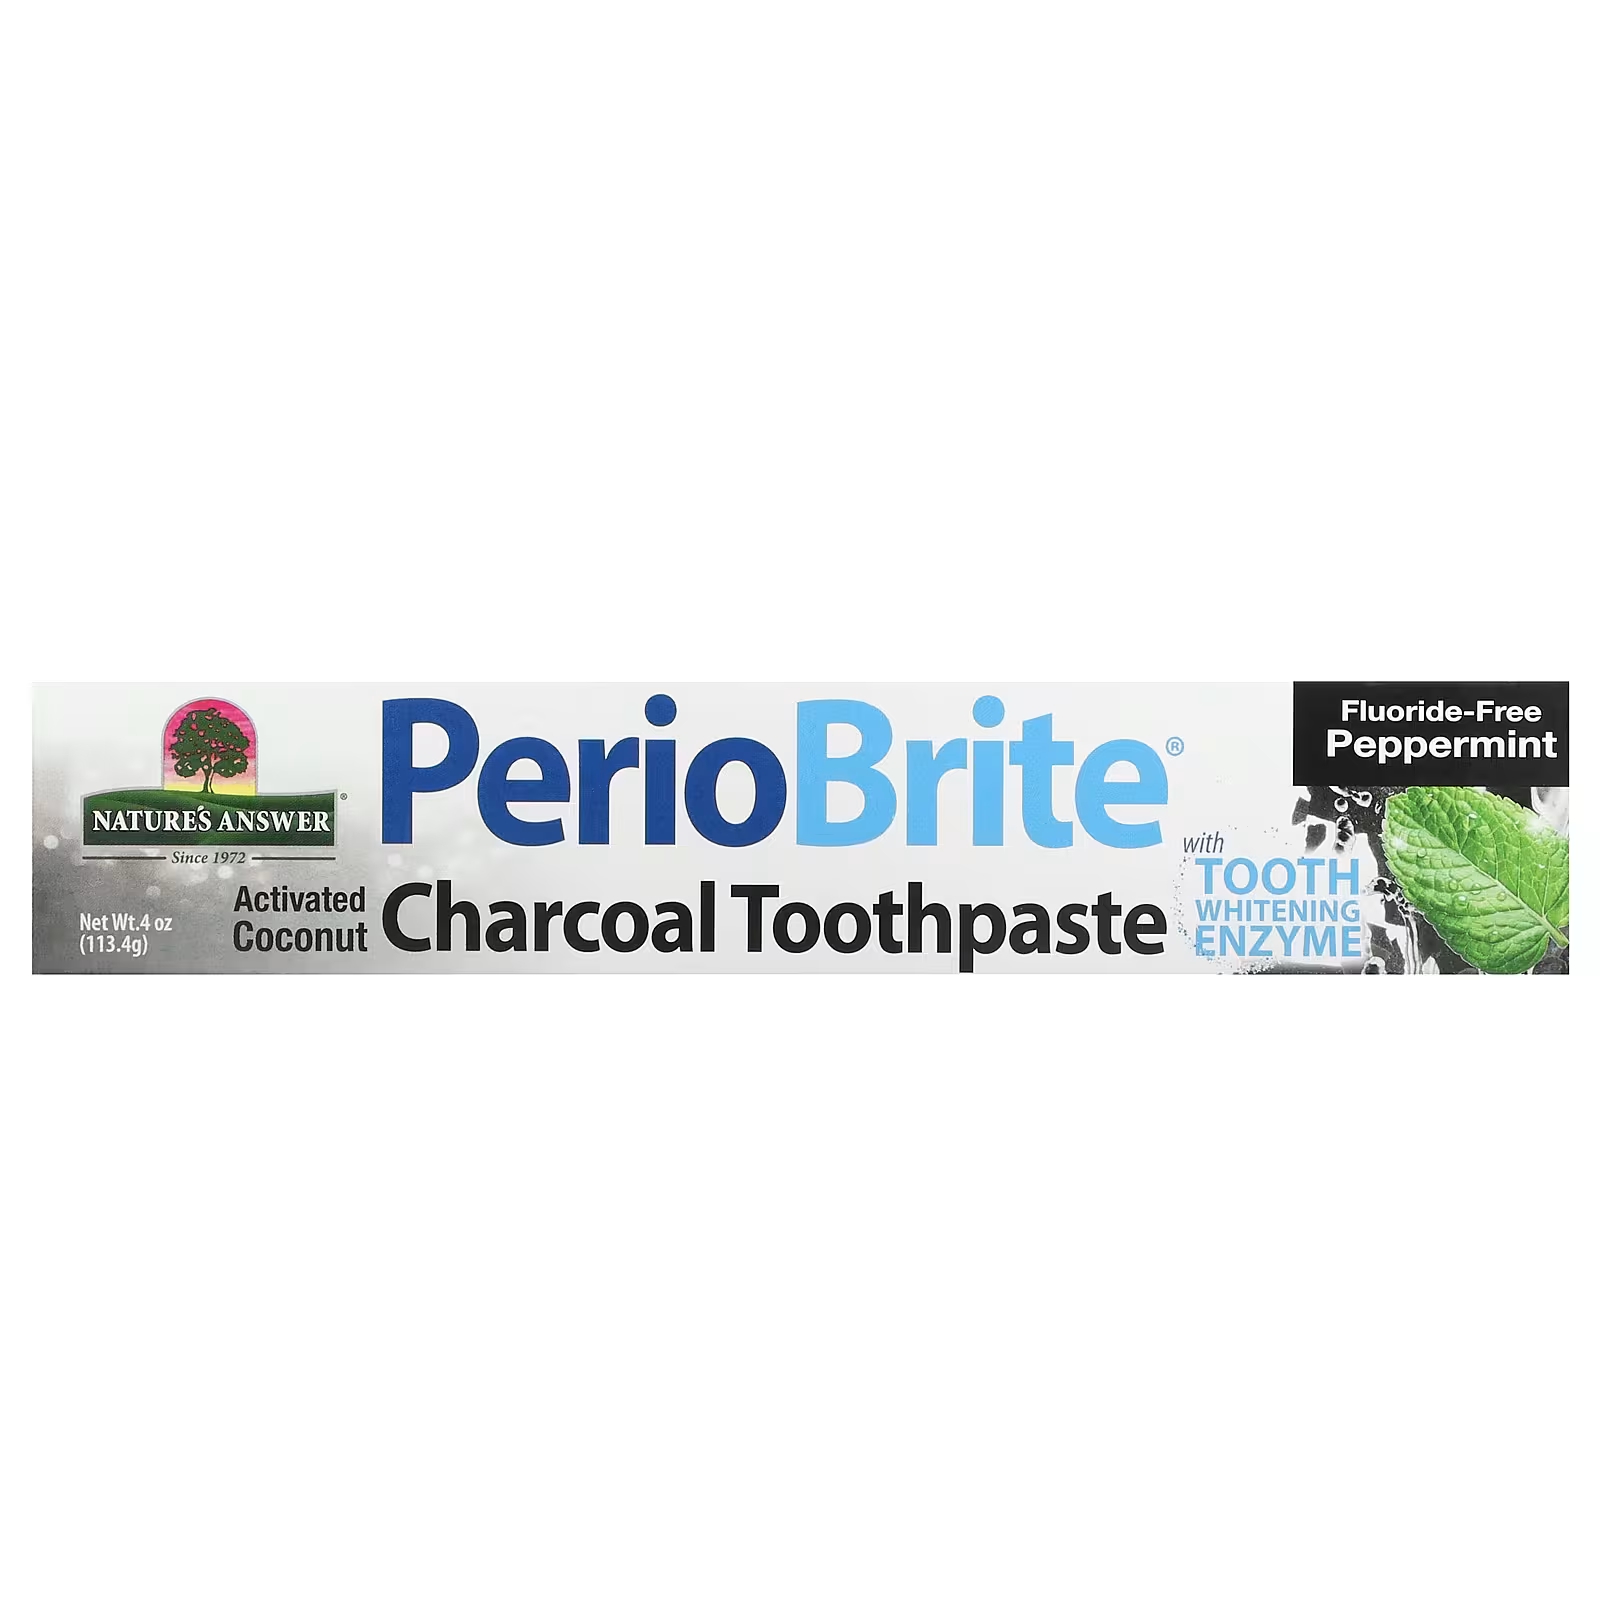 Nature's Answer PerioBrite Угольная зубная паста с перечной мятой, 4 унции (113,4 г)